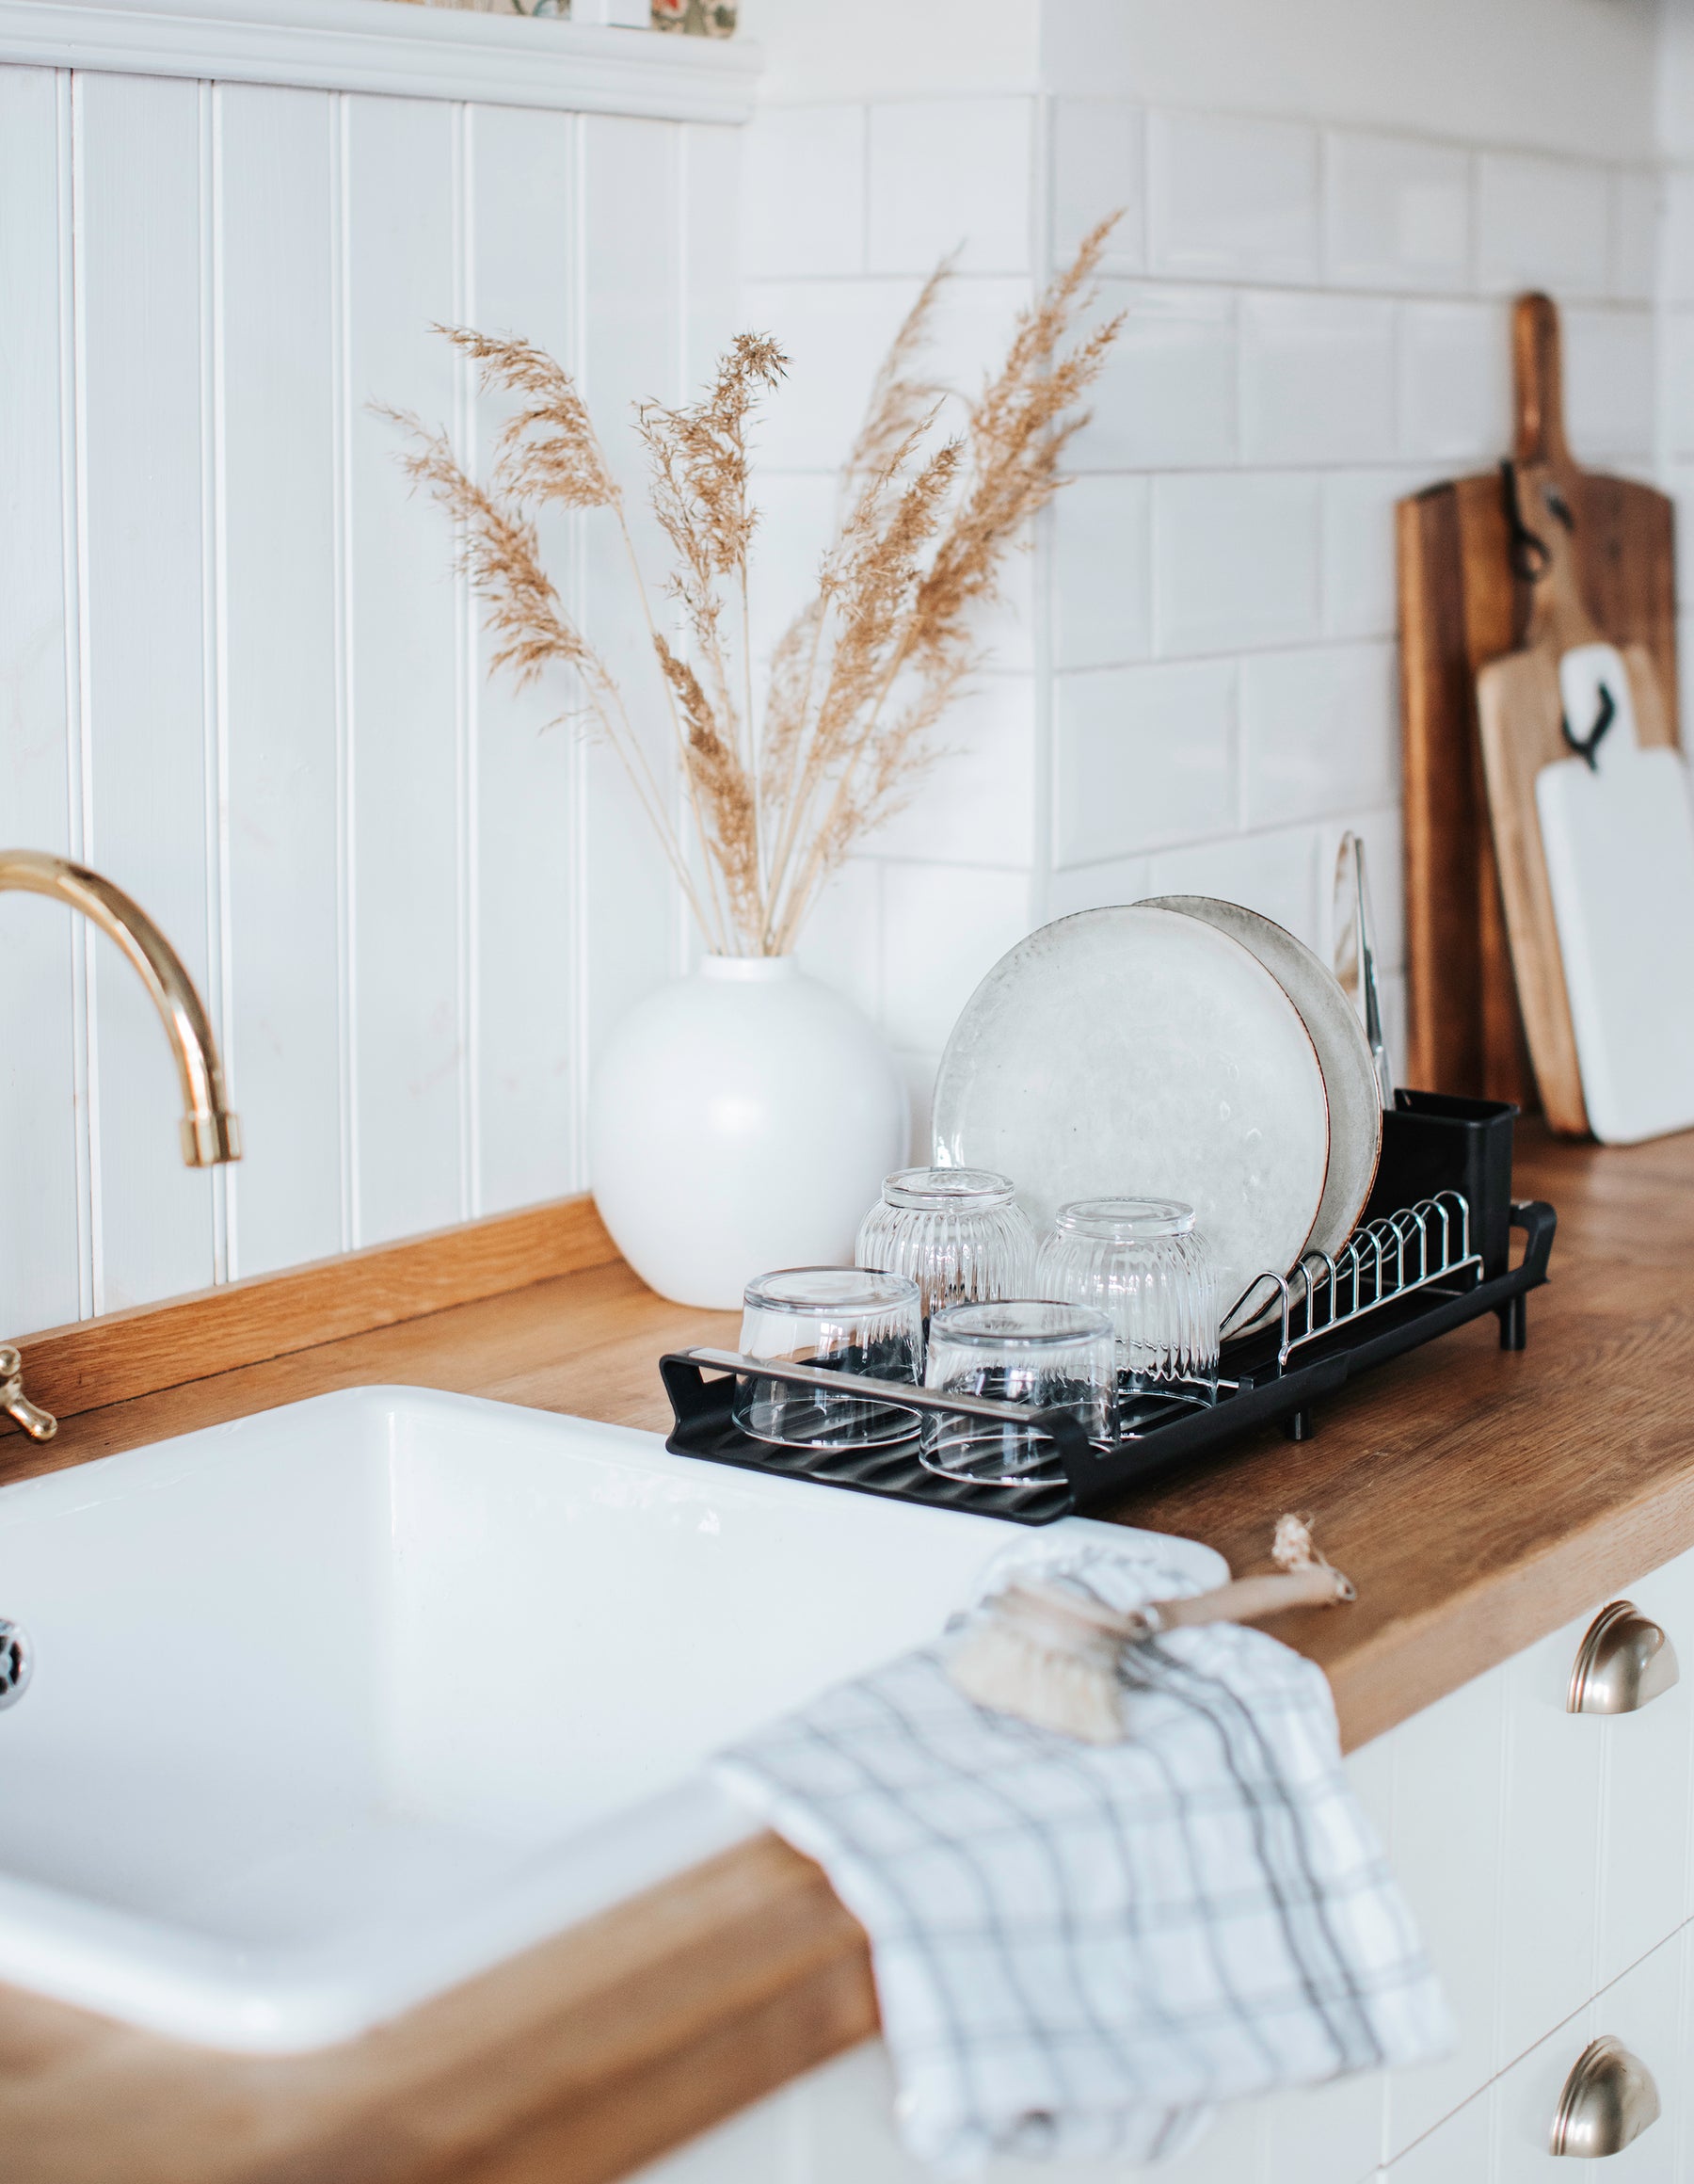 Vitt lantligt kök & vit vas med torkad vass placerad på köksbänk i trä. Dorre diskställ bredvid diskho med kopparkran